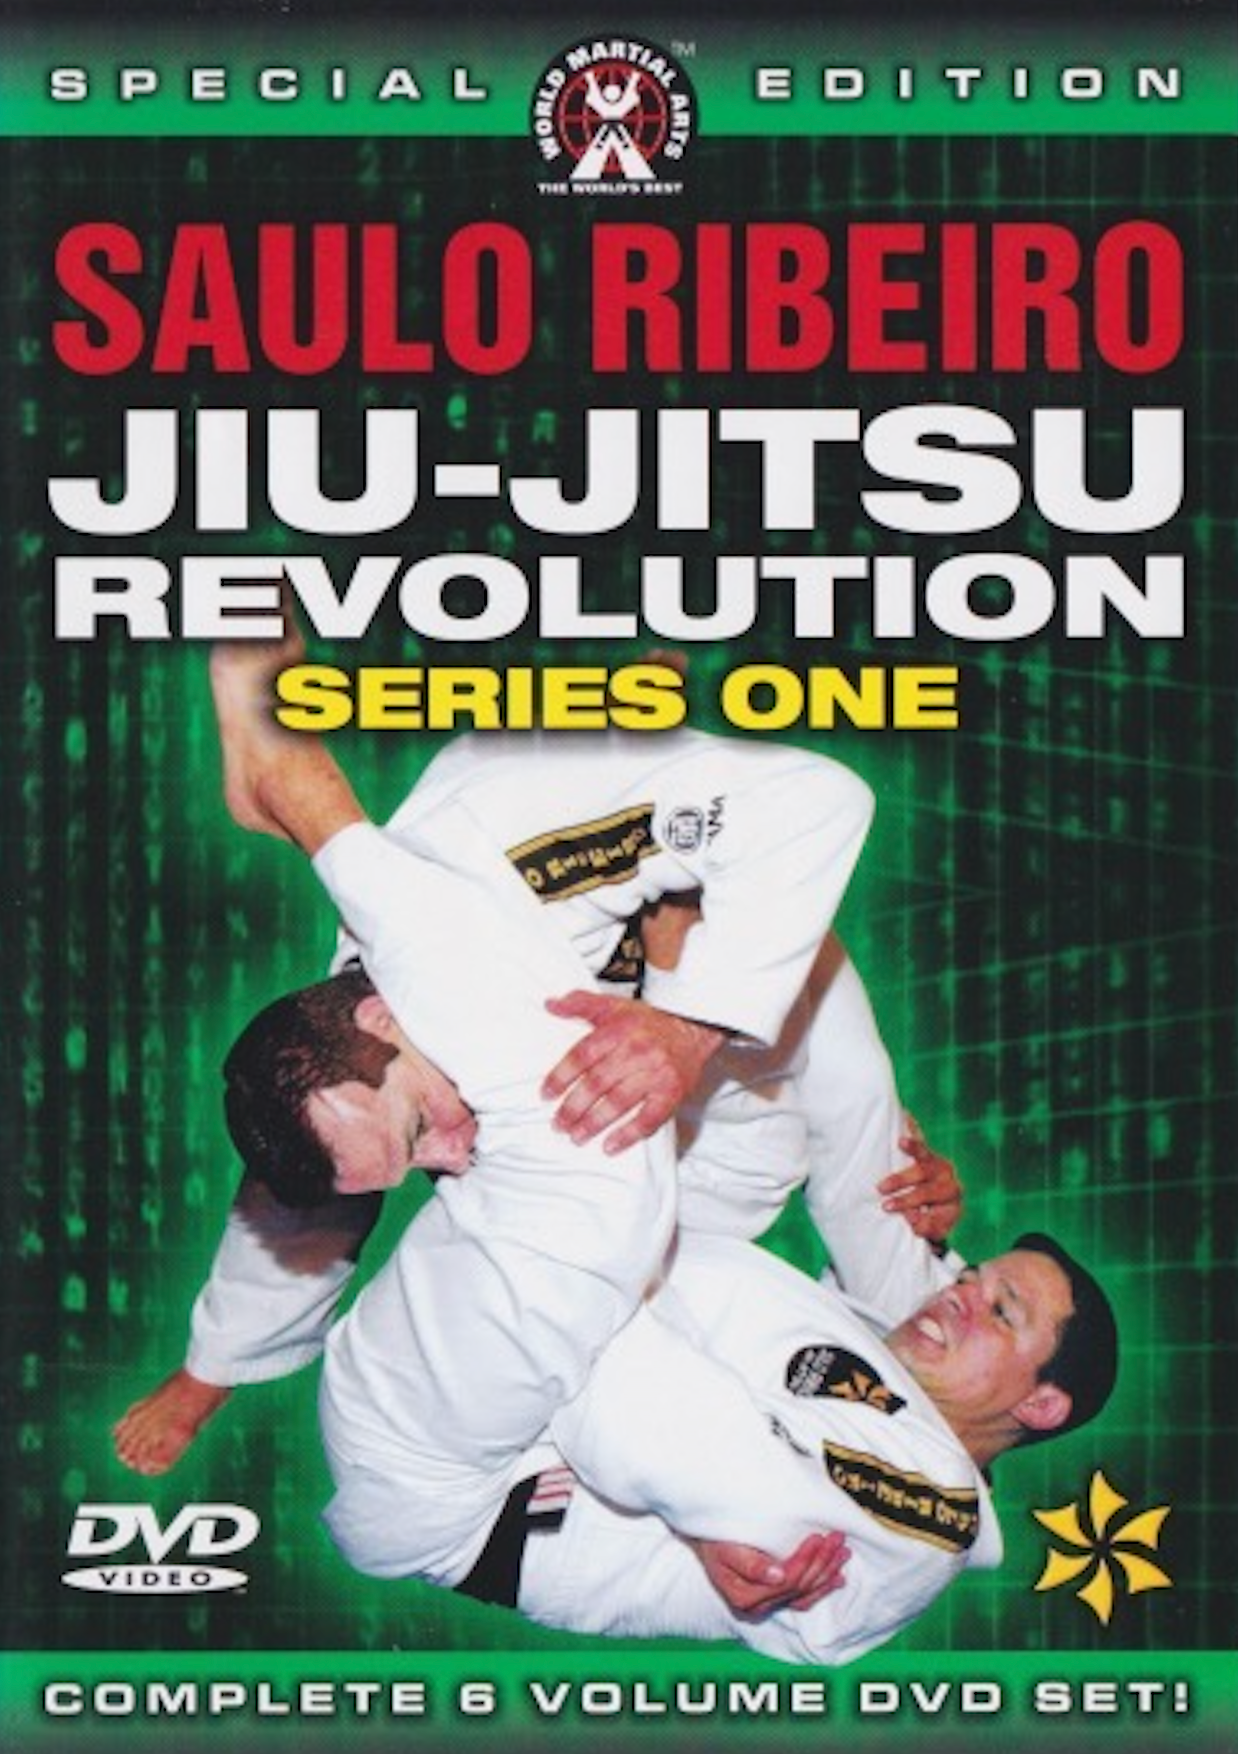 Jiu-Jitsu Revolution (6 DVD Set) by Saulo Ribeiro (Preowned)